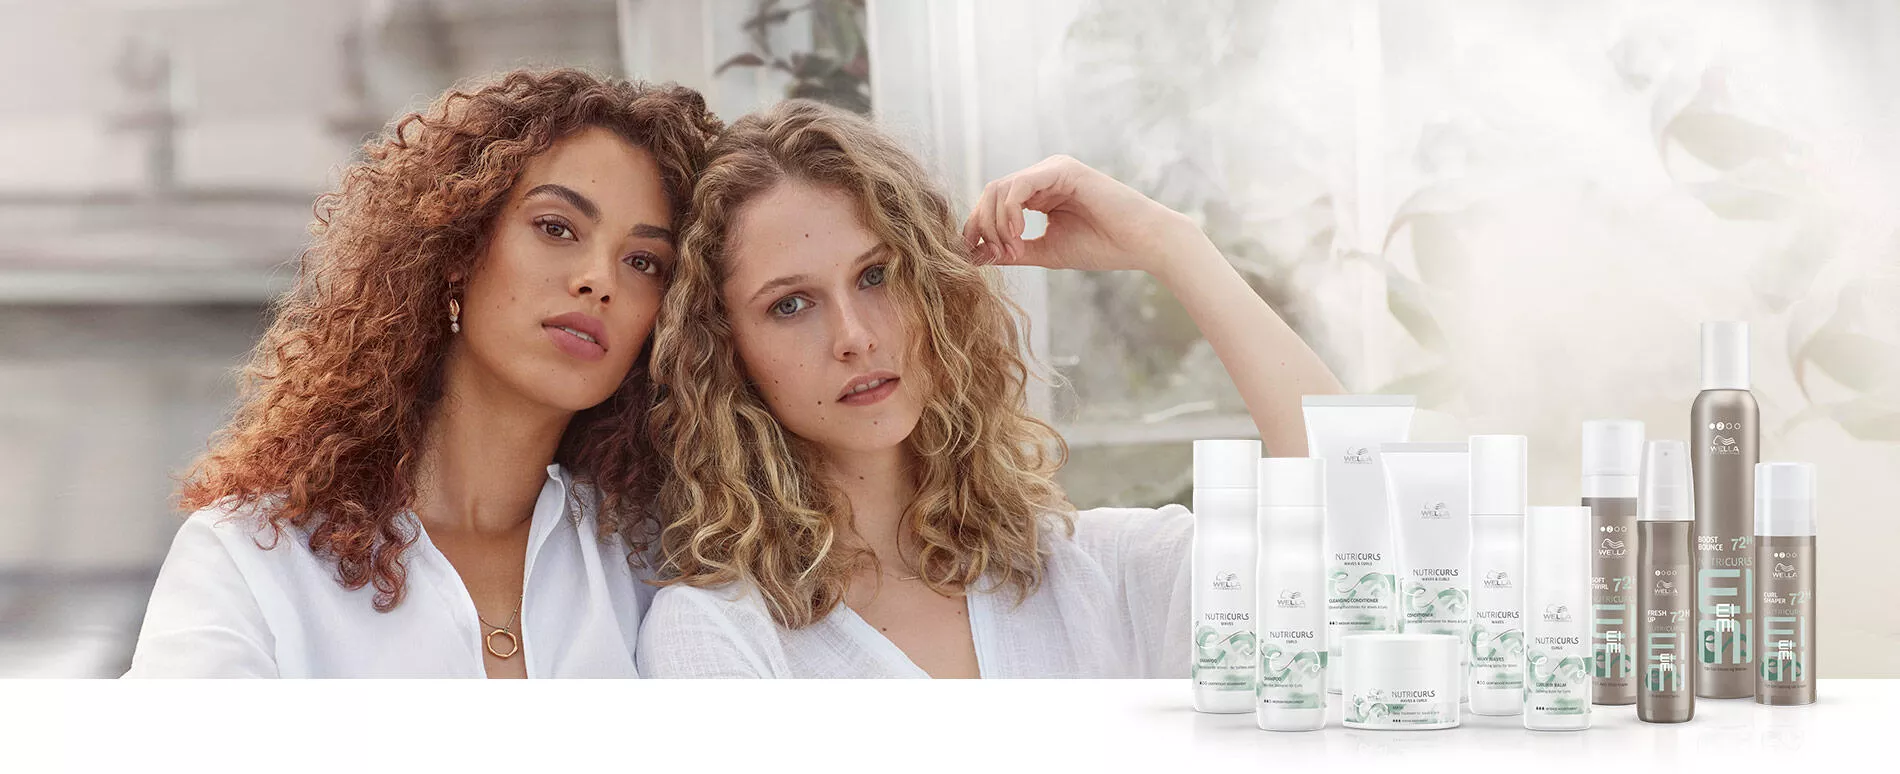 Duas mulheres com cachos fechados na altura dos ombros em roupas brancas, sentadas juntas, além de frascos de produtos NUTRICURLS